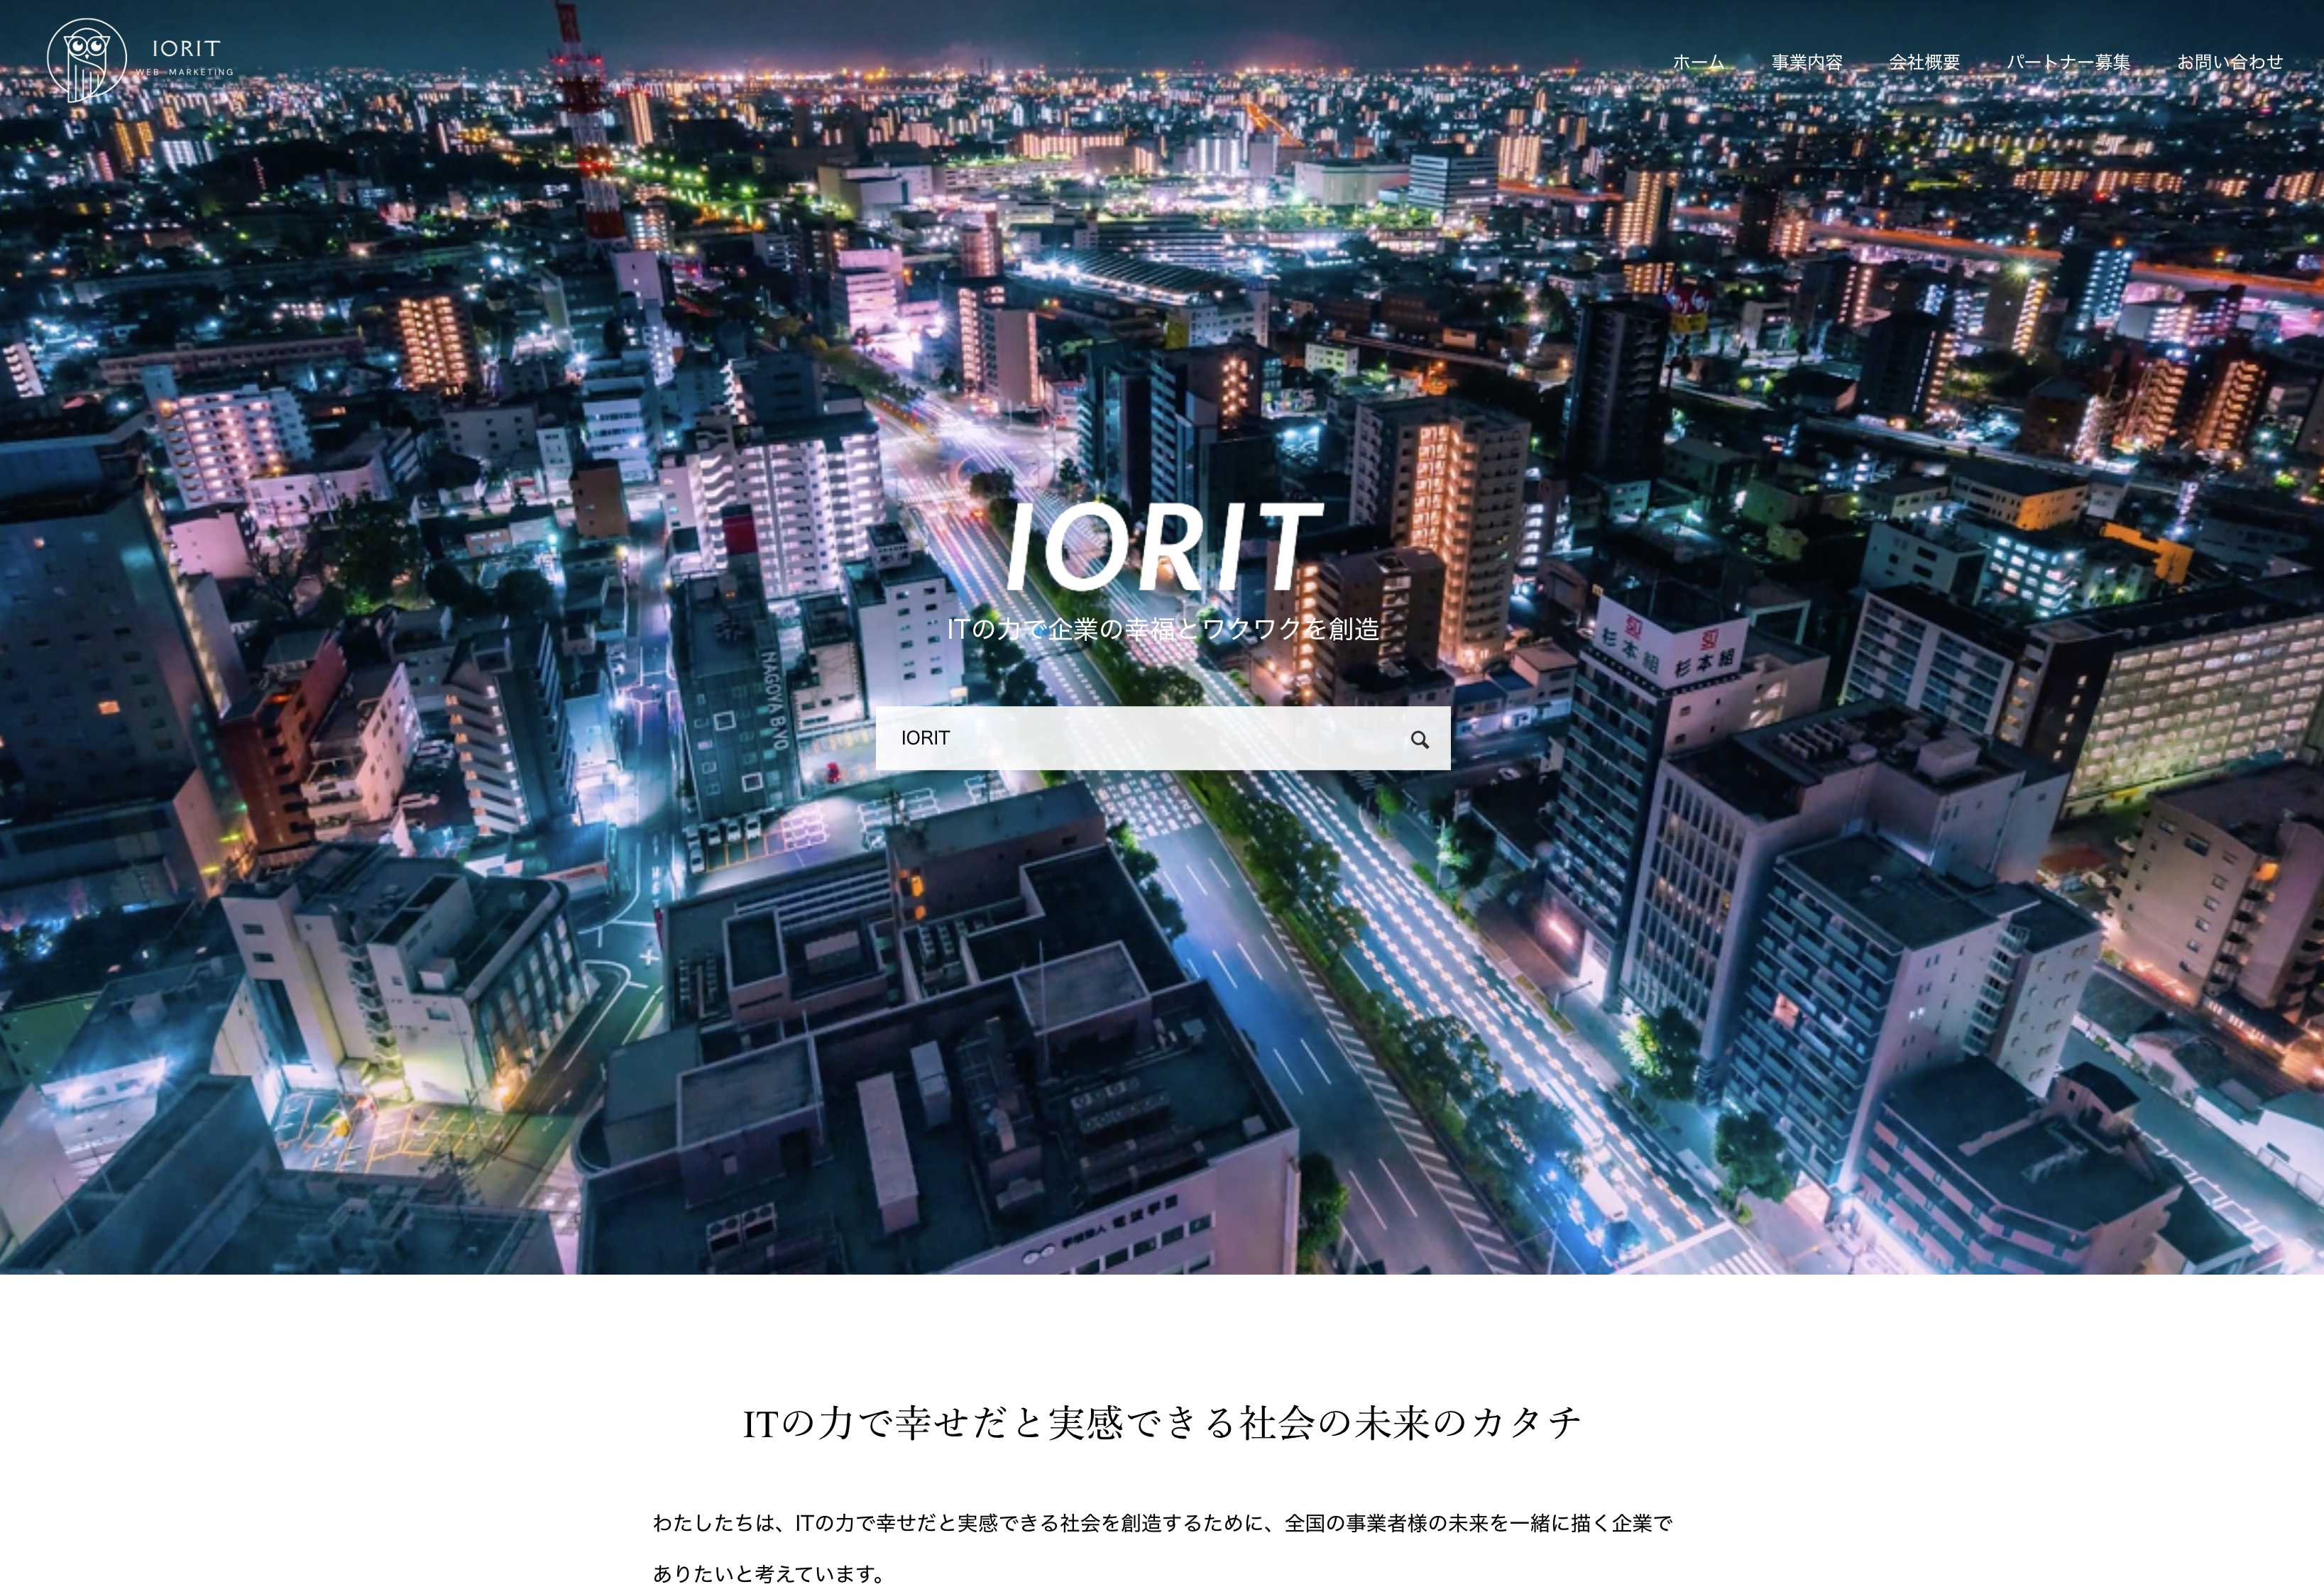 株式会社IORITの株式会社IORIT:商品撮影サービス